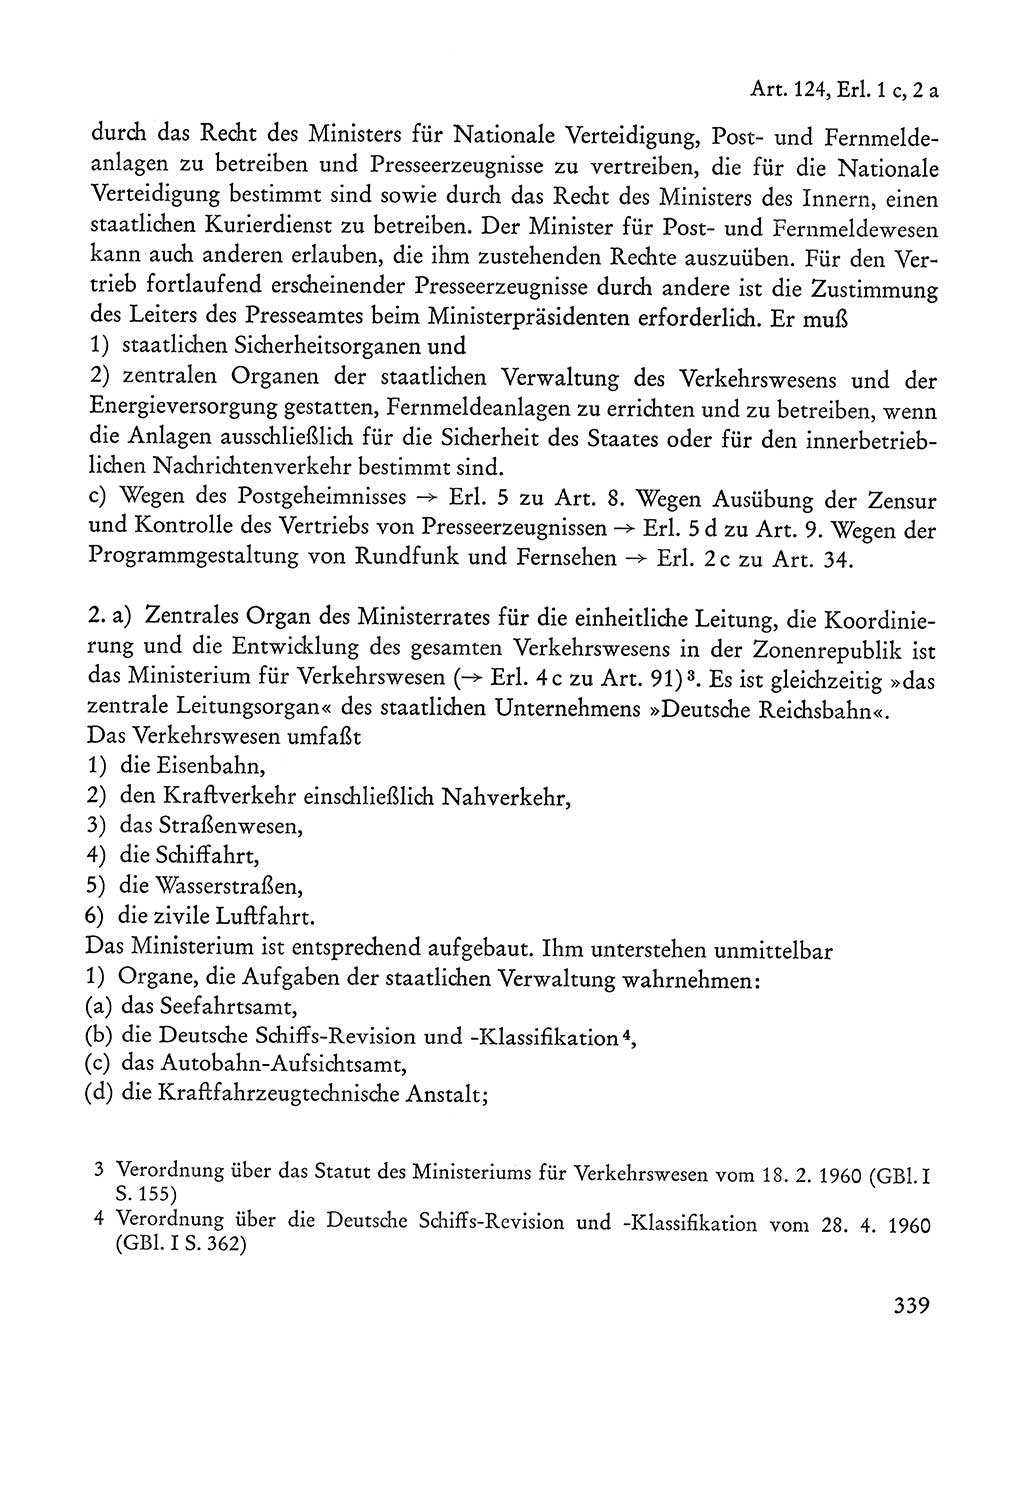 Verfassung der Sowjetischen Besatzungszone (SBZ) Deutschlands [Deutsche Demokratische Republik (DDR)], Text und Kommentar [Bundesrepublik Deutschland (BRD)] 1962, Seite 339 (Verf. SBZ Dtl. DDR Komm. BRD 1962, S. 339)